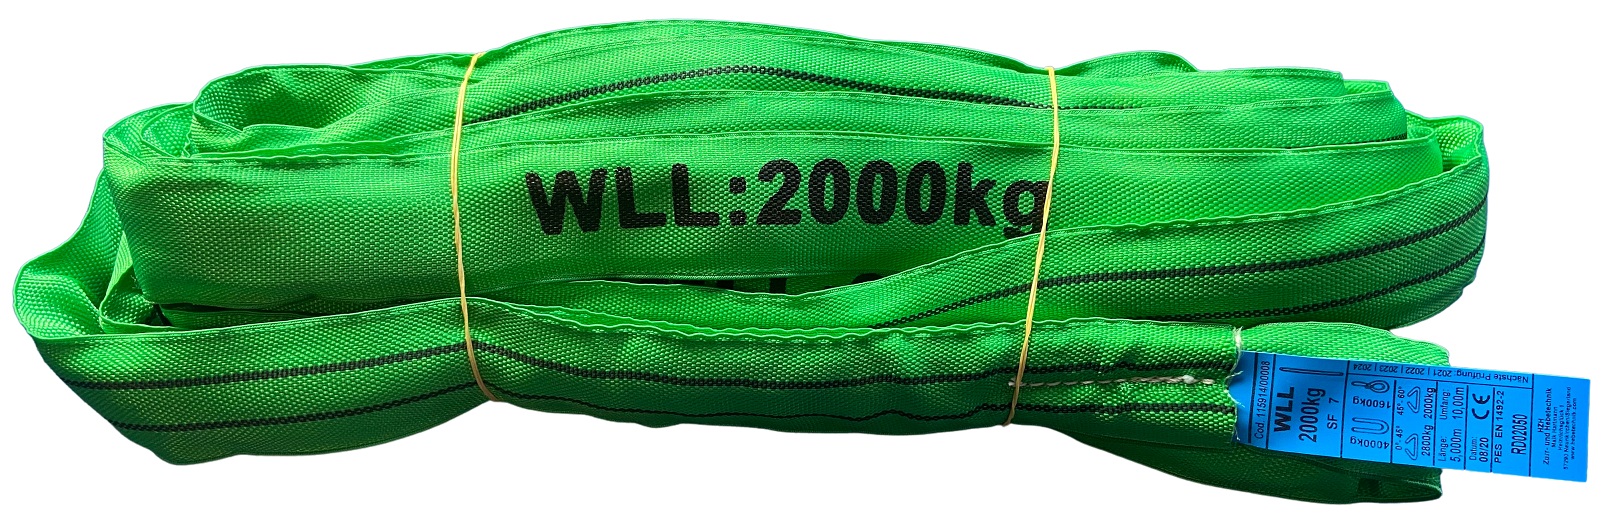 Rundschlinge WLL 2000kg grün 2m  10 EUR -  Gebrauchte-Veranstaltungstechnik.de - Der Marktplatz für gebrauchte  Veranstaltungstechnik